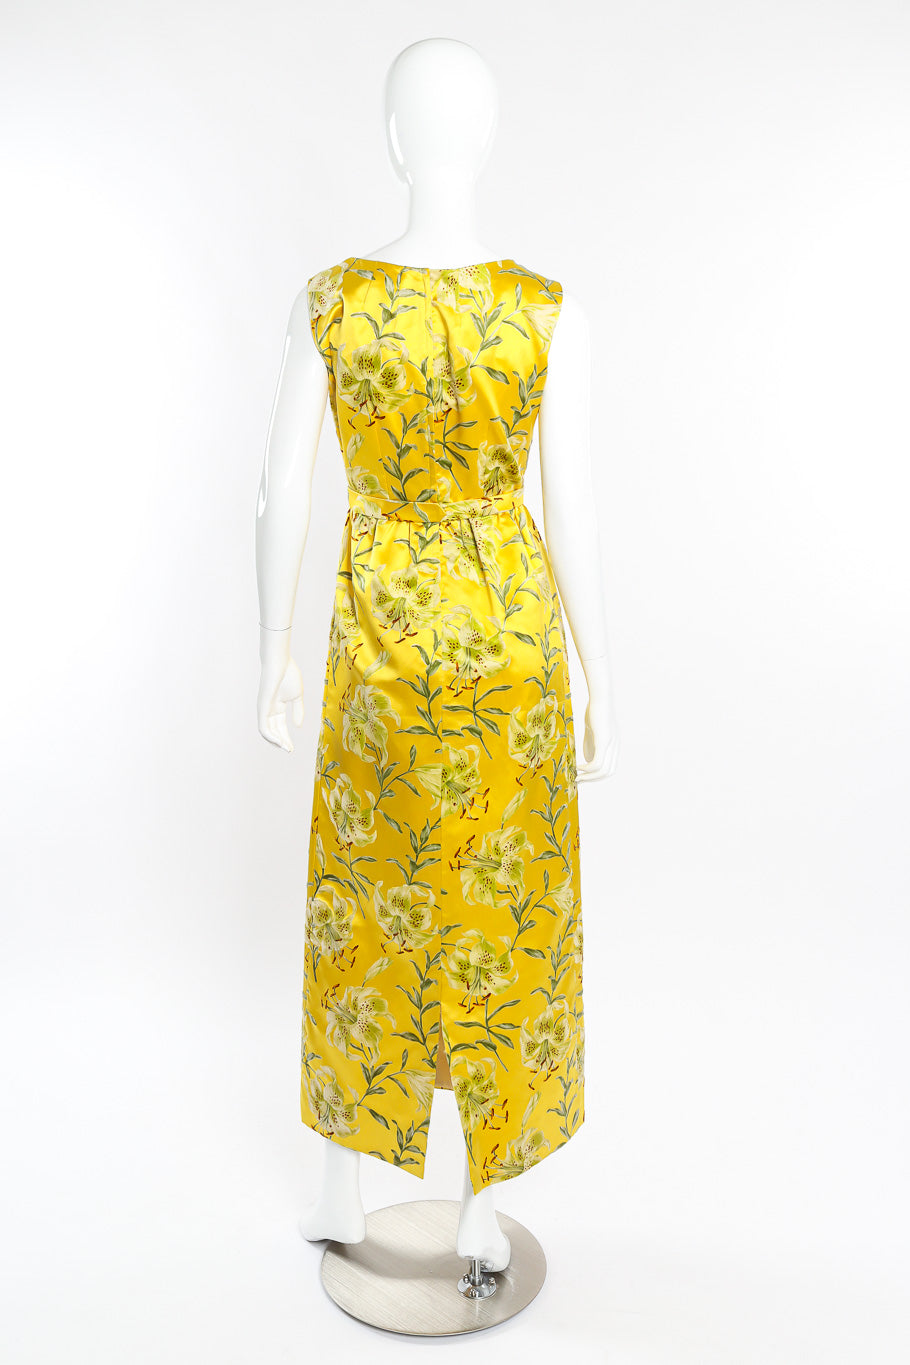 Velvet floral dress by Nat Kaplan on mannequin back @recessla